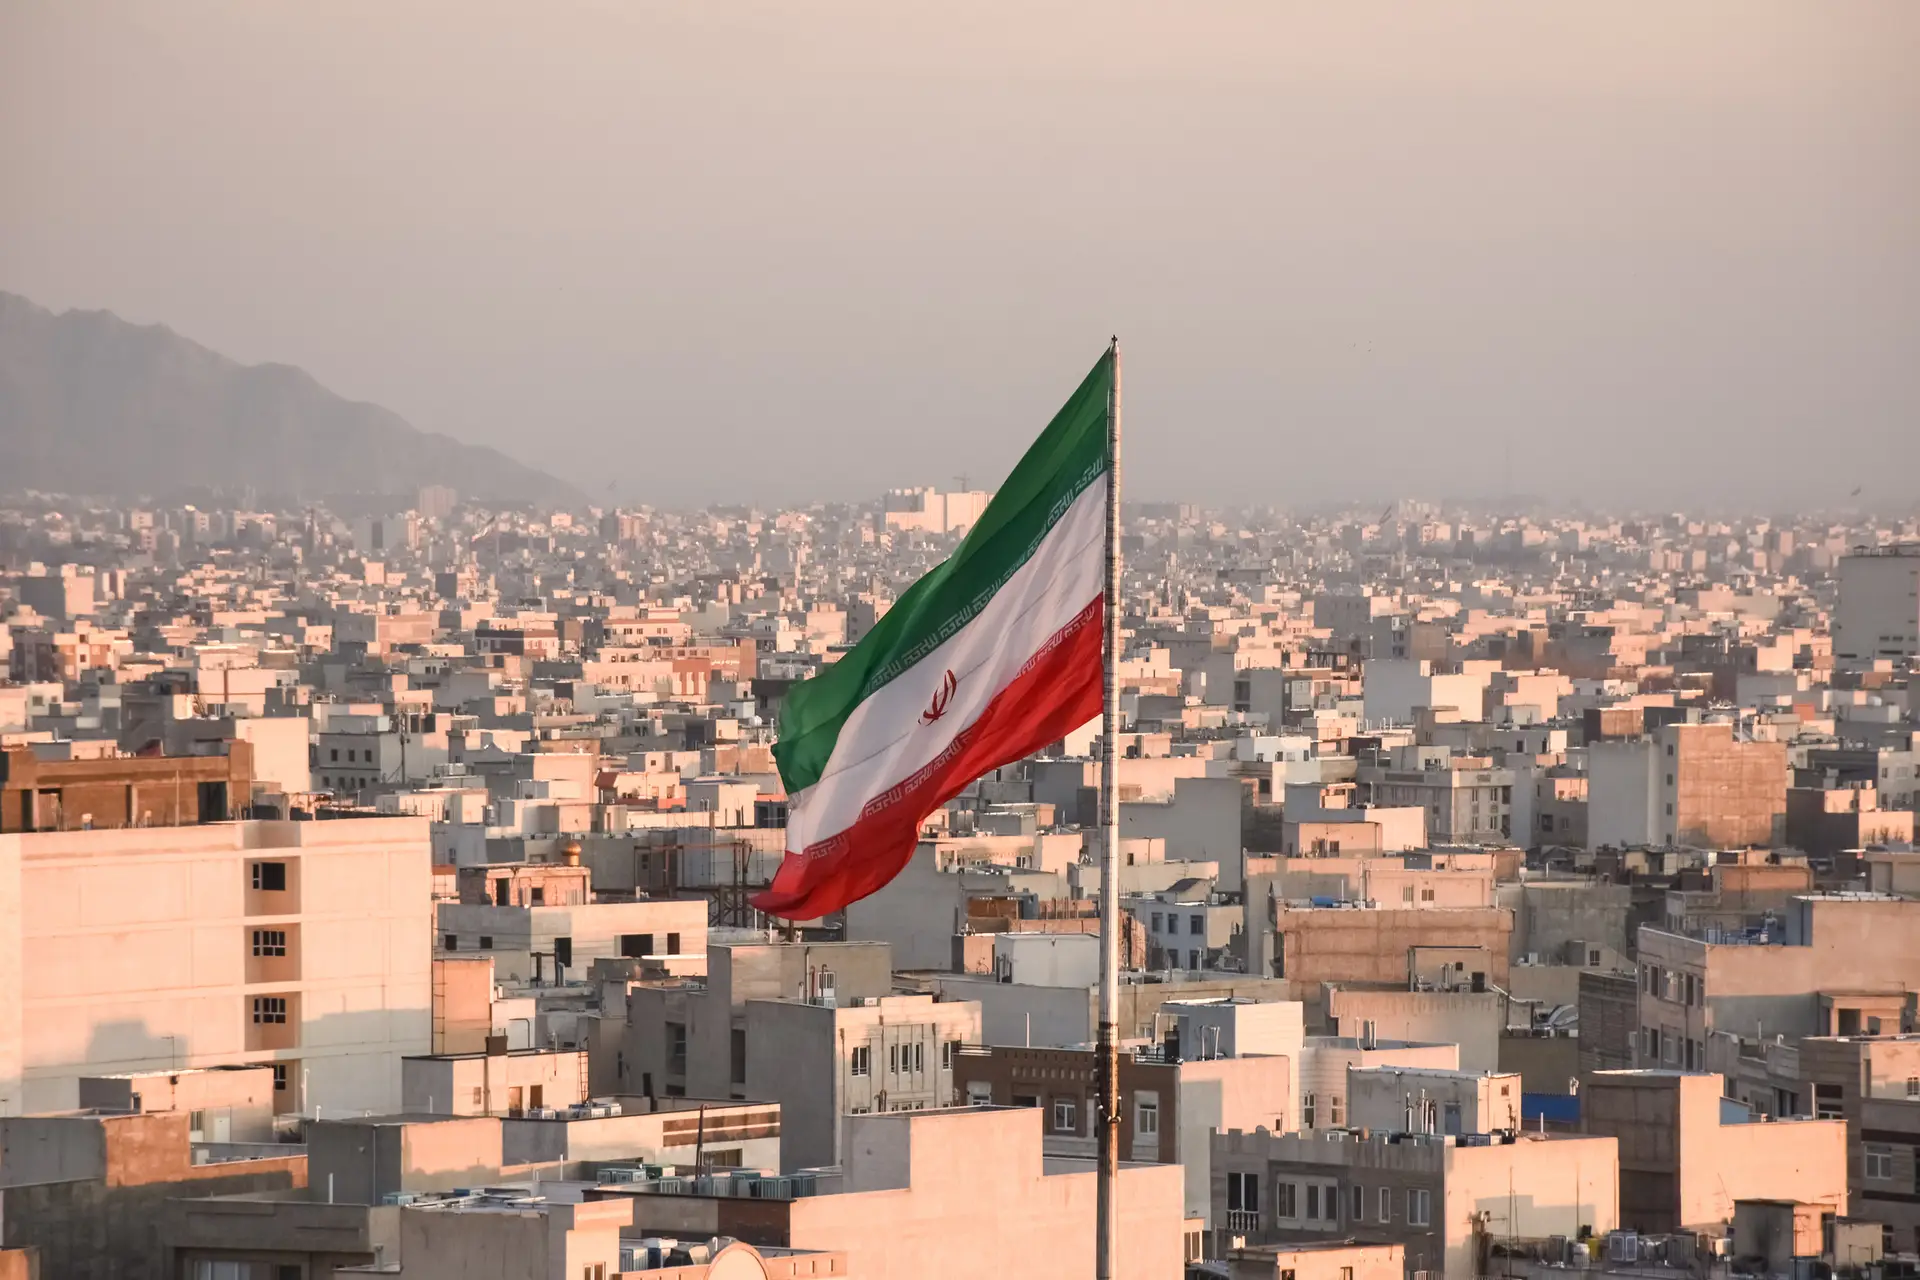 Irão apreendeu navio de bandeira portuguesa por “violação de normas”